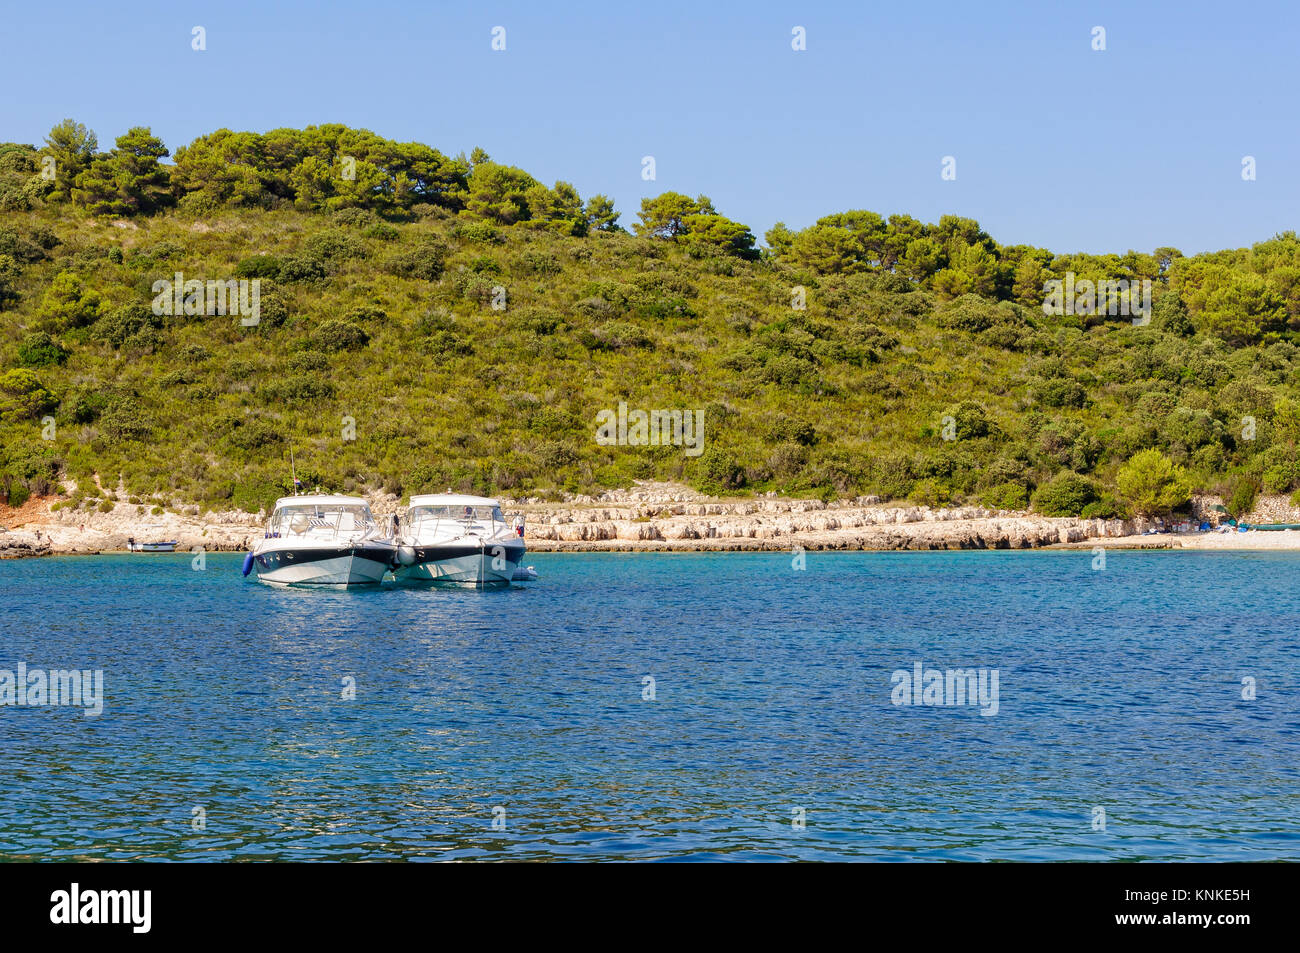 Deux yachts ancrés côte à côte dans la magnifique baie Milne - Hvar, Croatie Banque D'Images